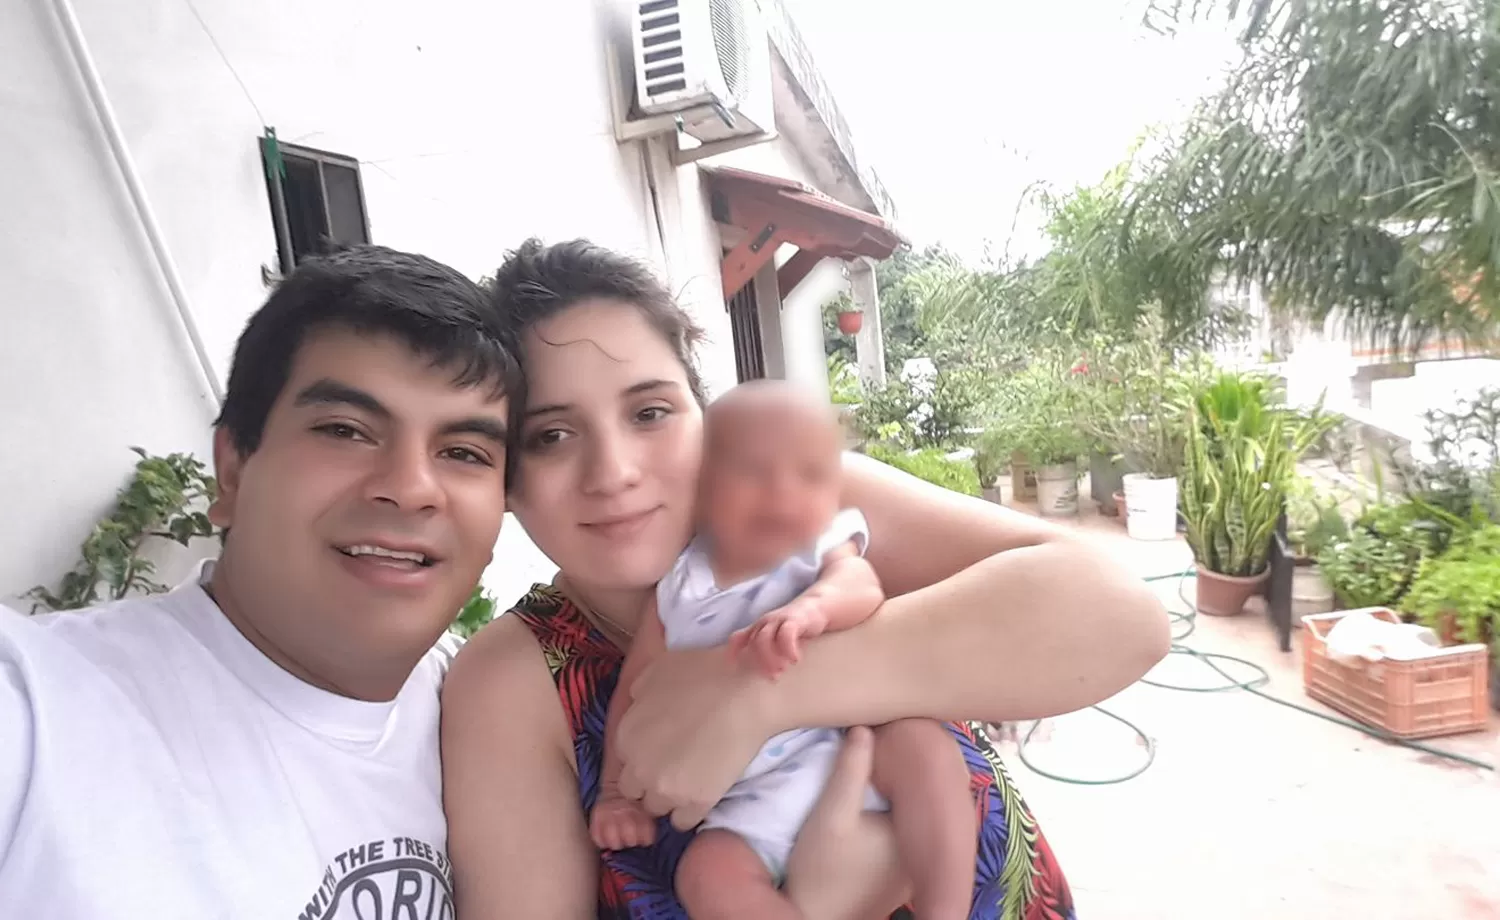 FAMILIA. Claudio Adrián Sánchez, su esposa Dalila y uno de sus hijos